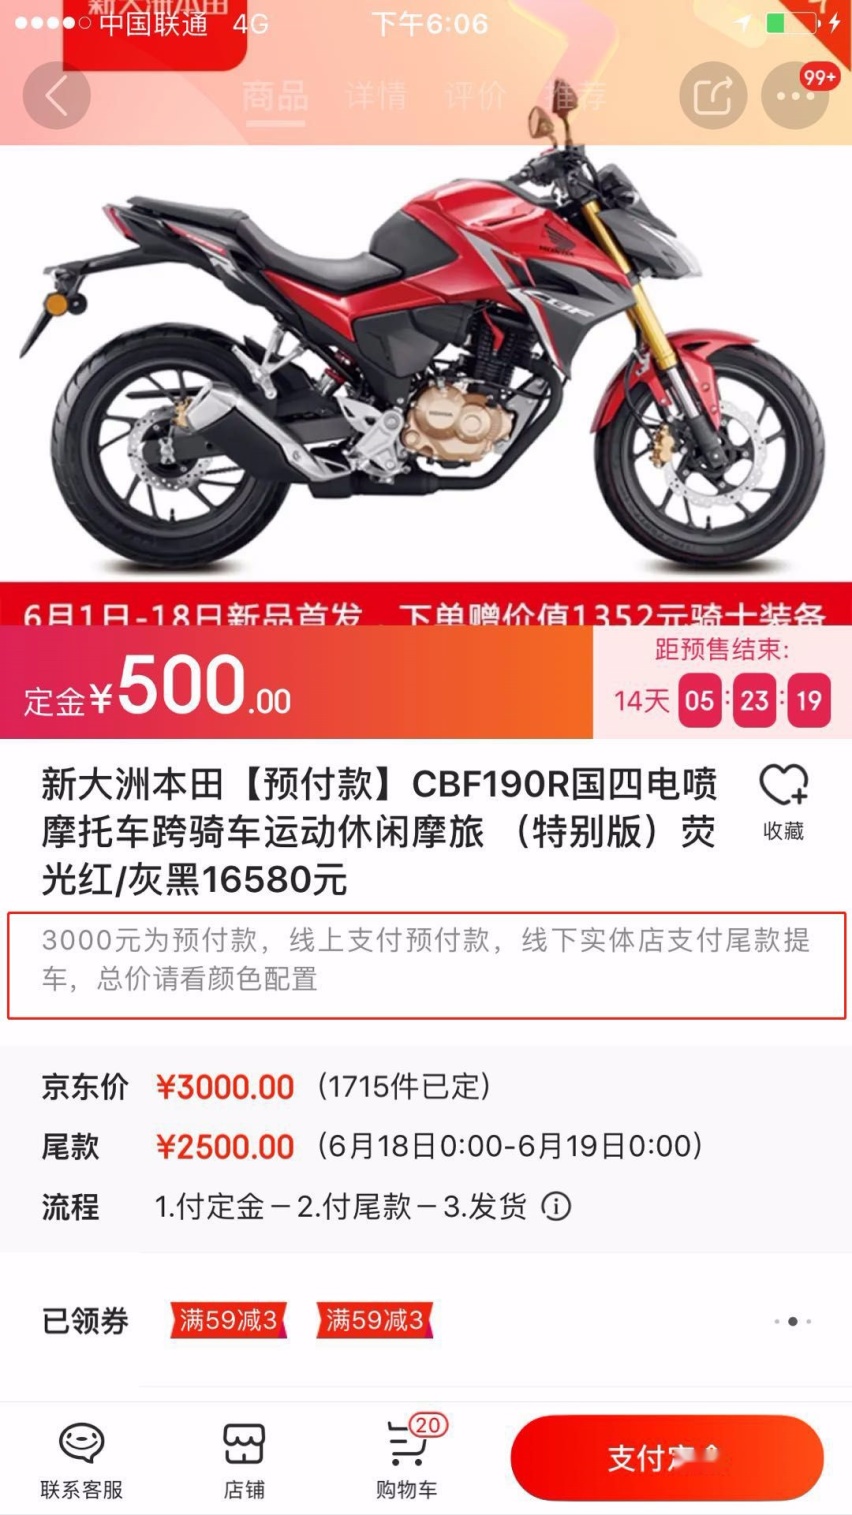 刘强东的京东又“耍流氓” 618当天3千买摩托第二天涨1.3